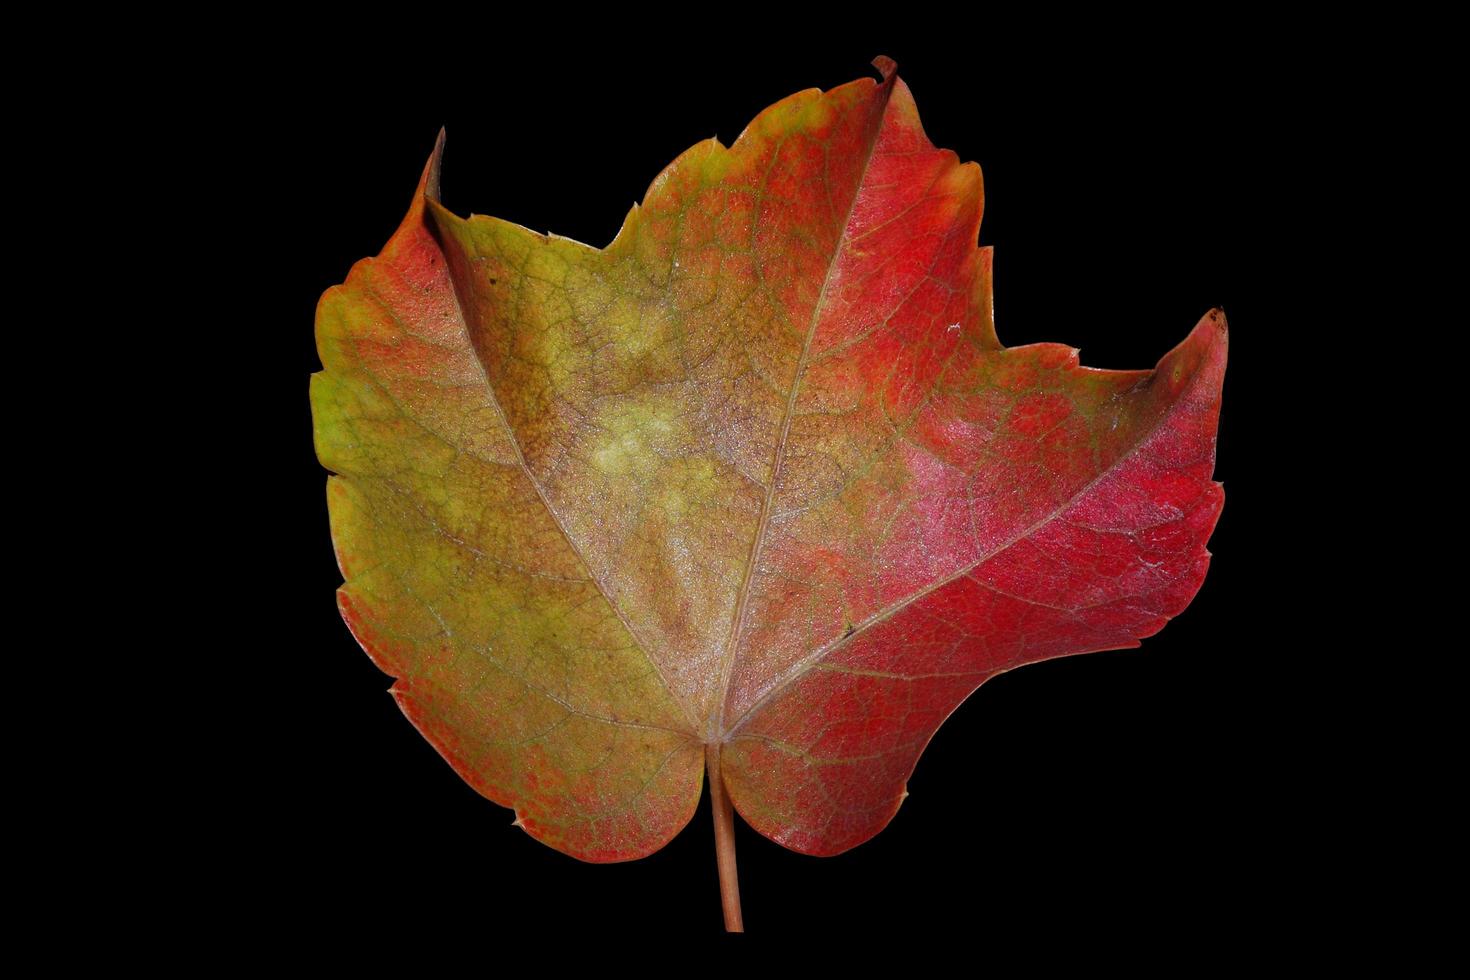 großes Herbstblatt gelb rot auf schwarz foto